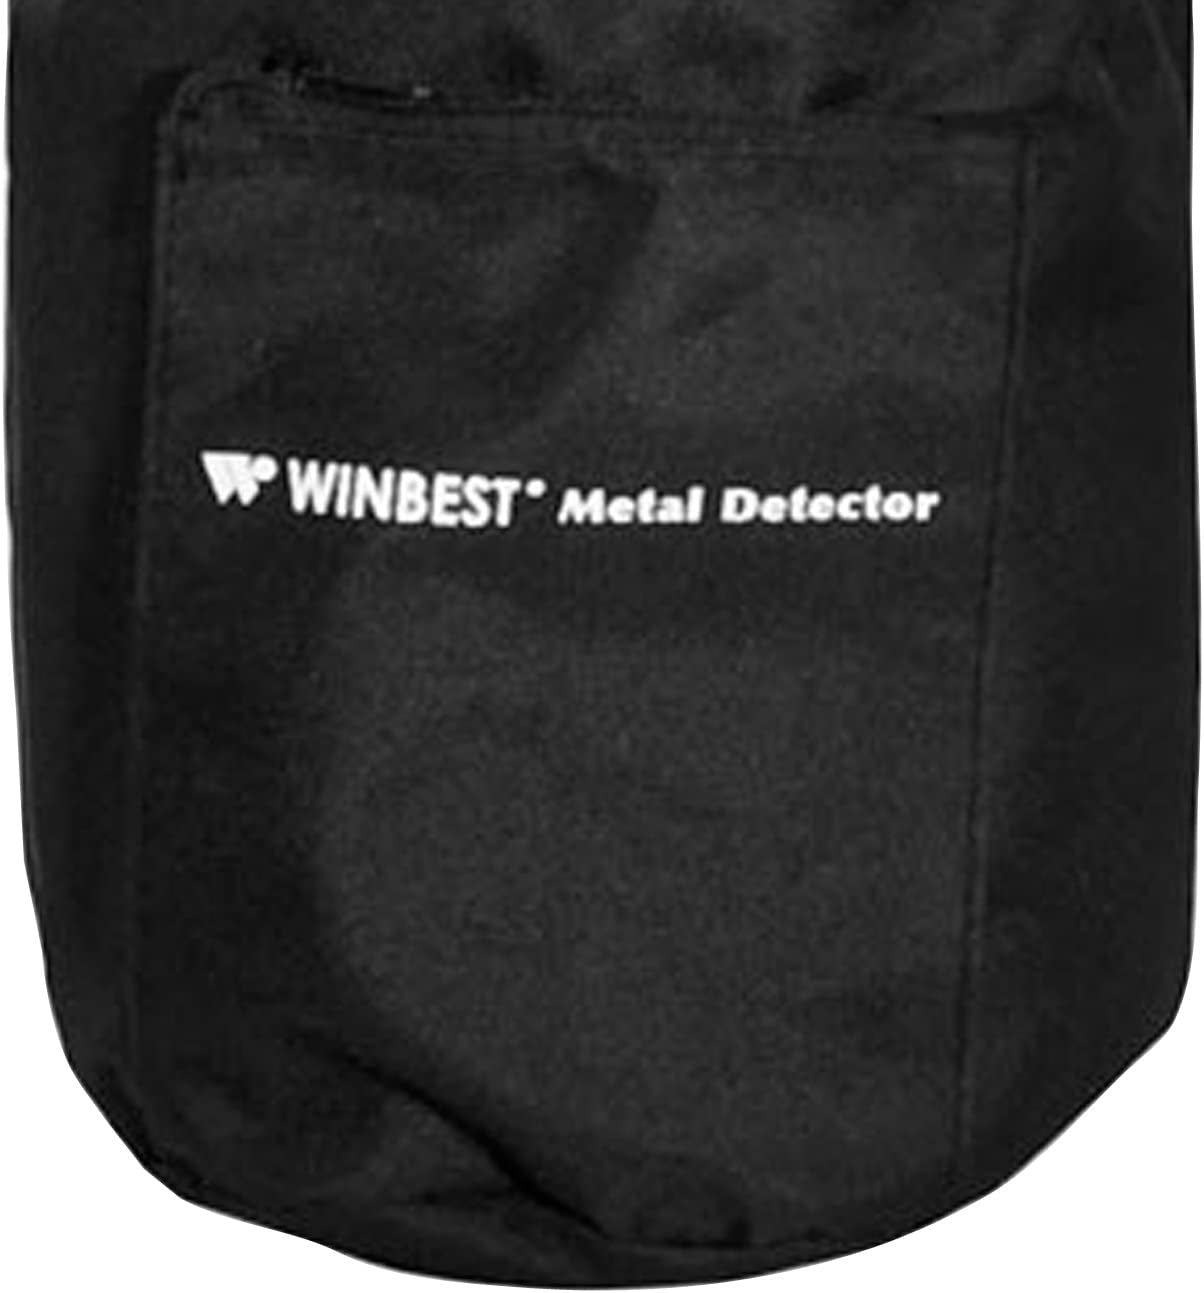 Winbest Metal Detector Carrying Case by BARSKA Black